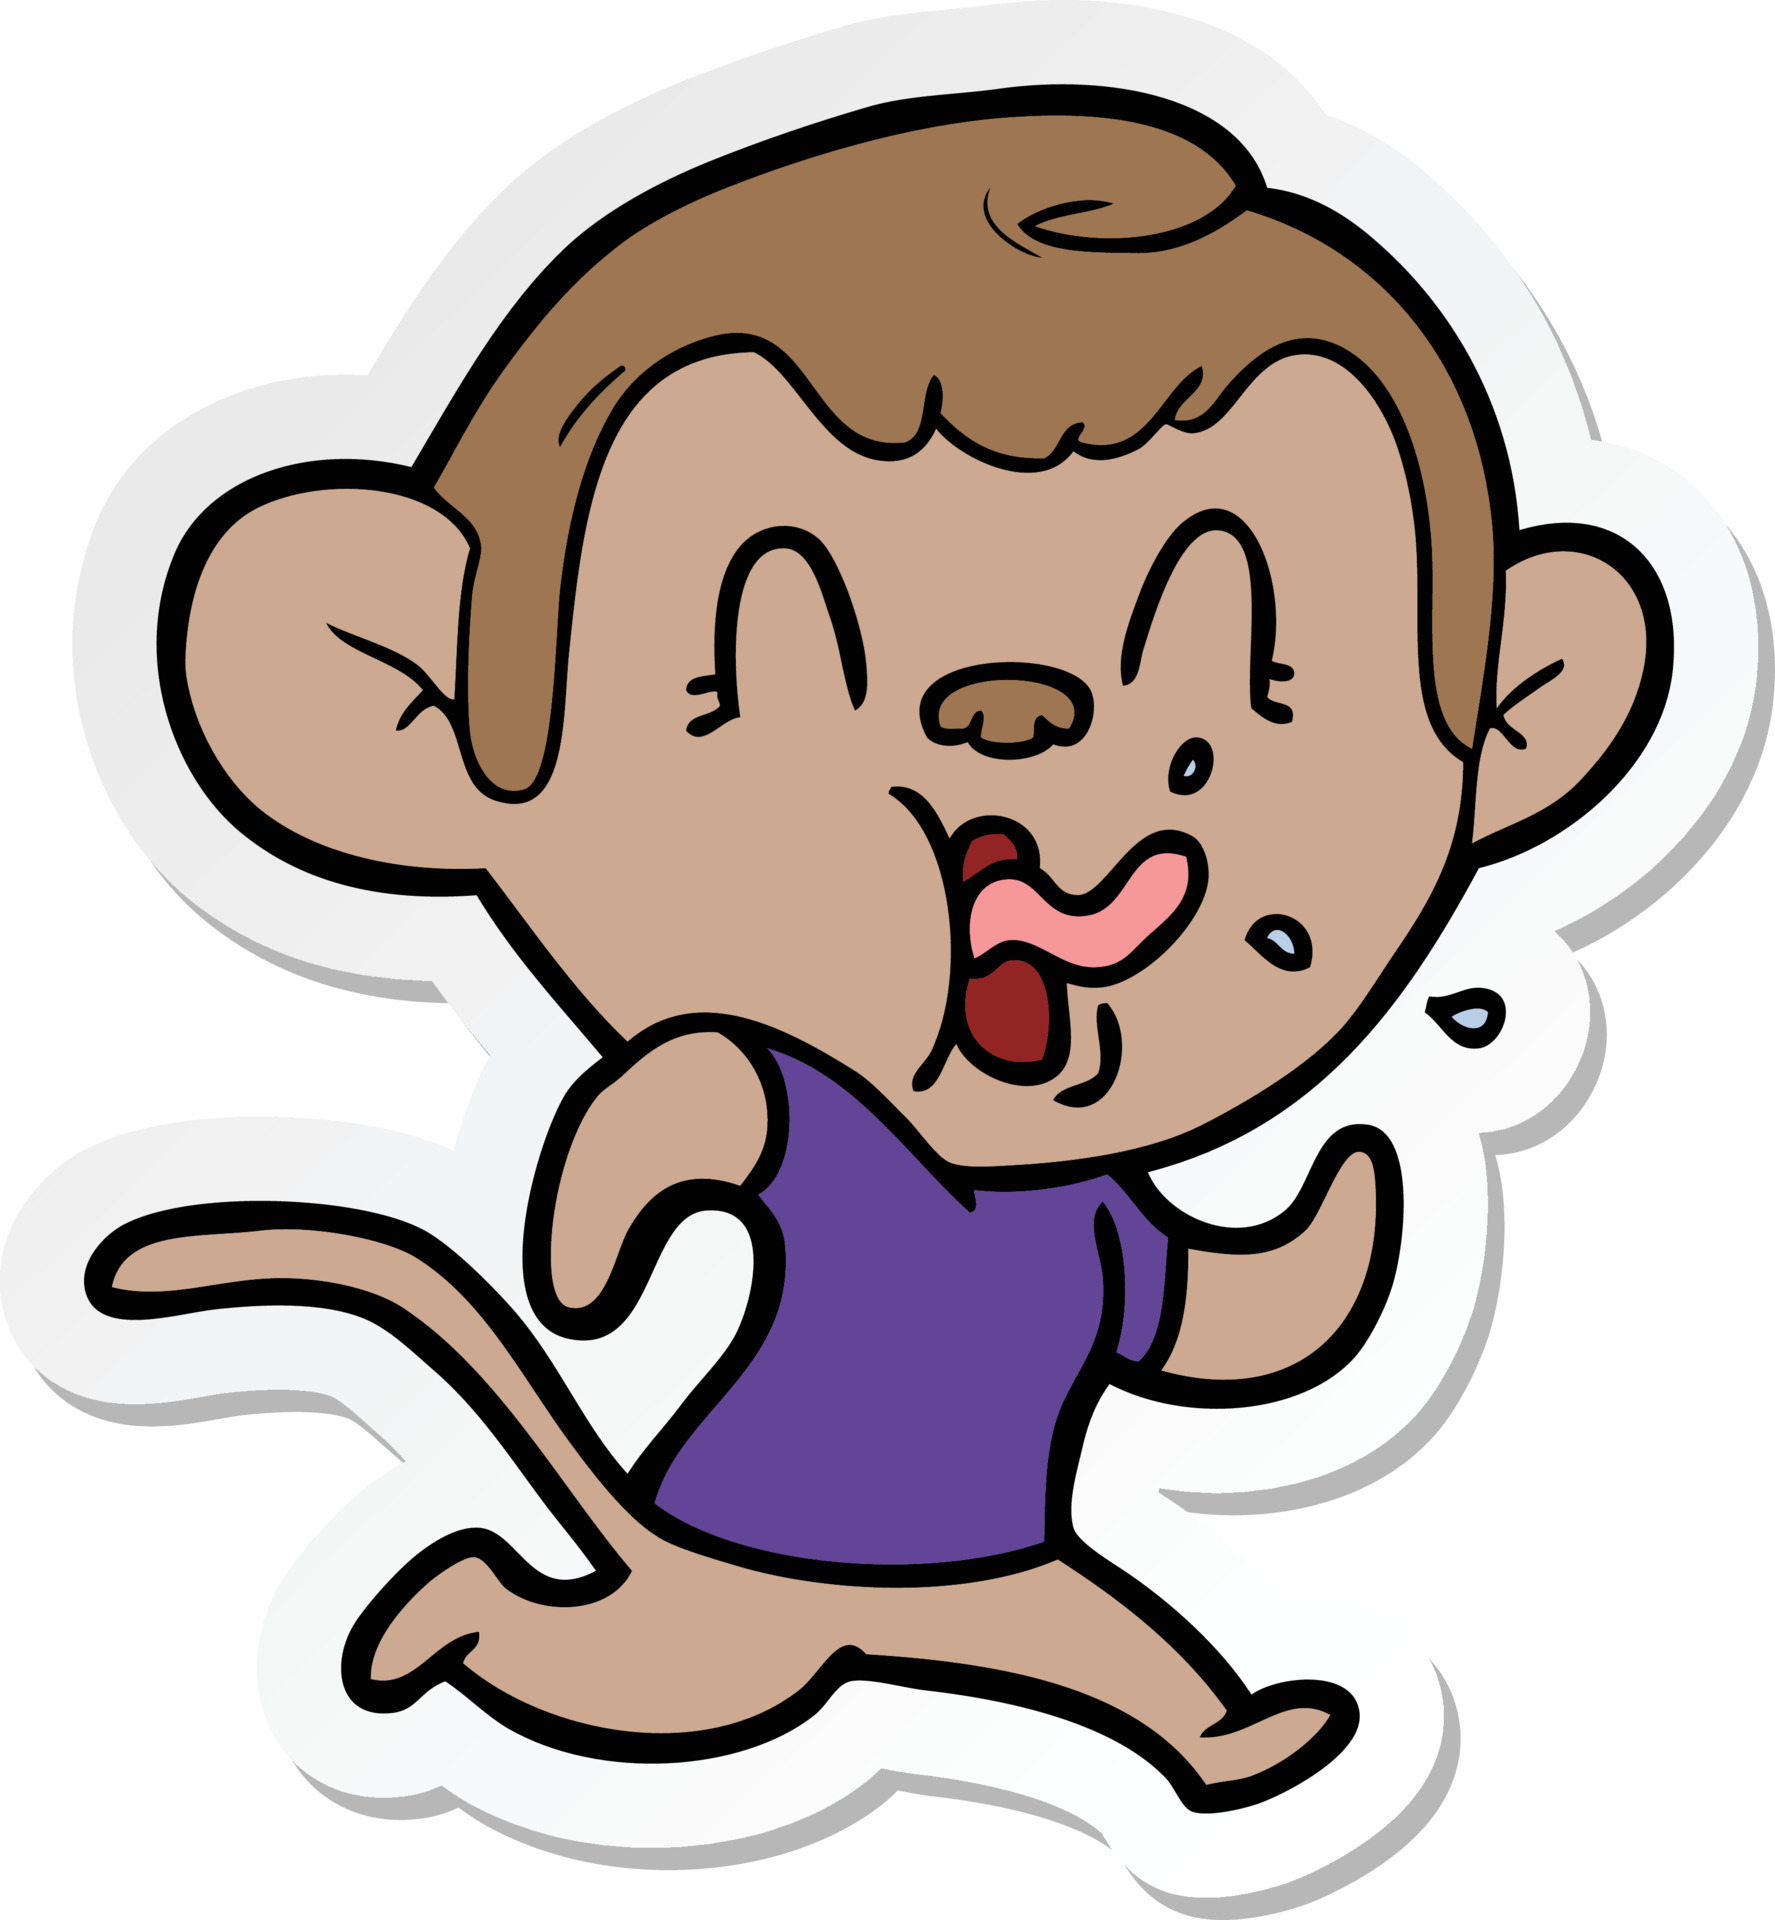 sticker of a crazy cartoon monkey running 8809230 Vector Art at Vecteezy